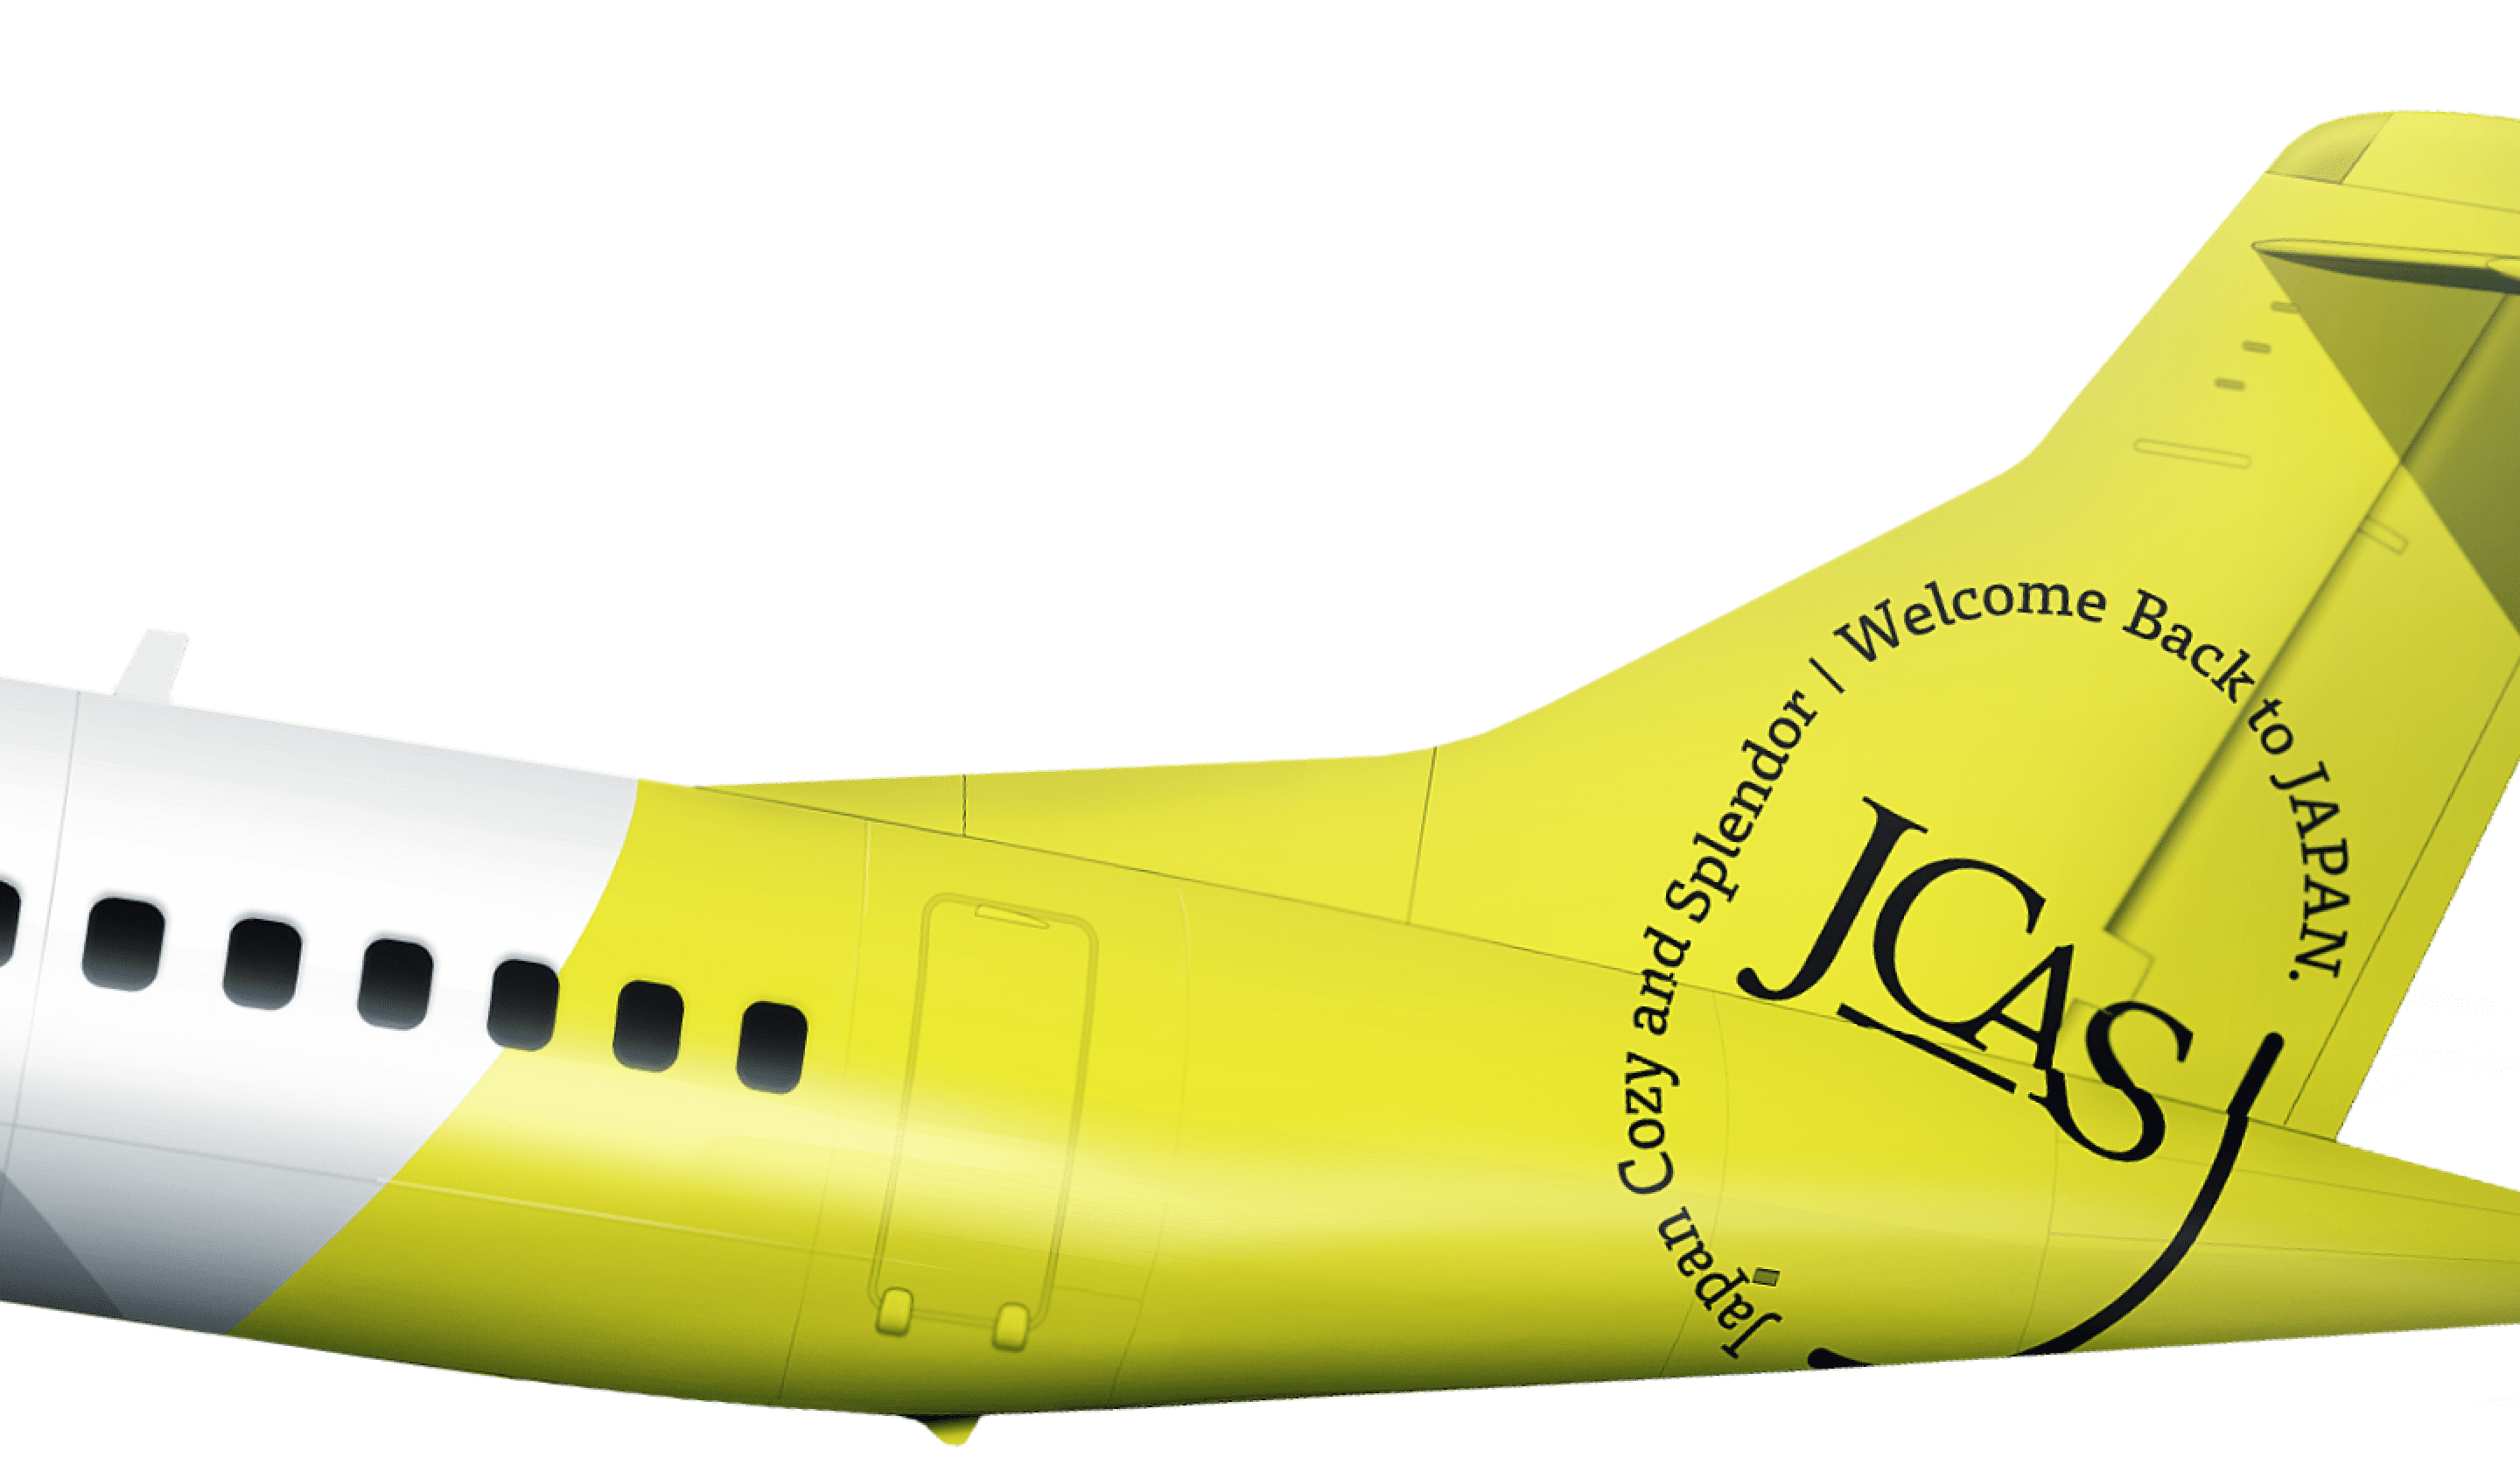 JCAS Airways